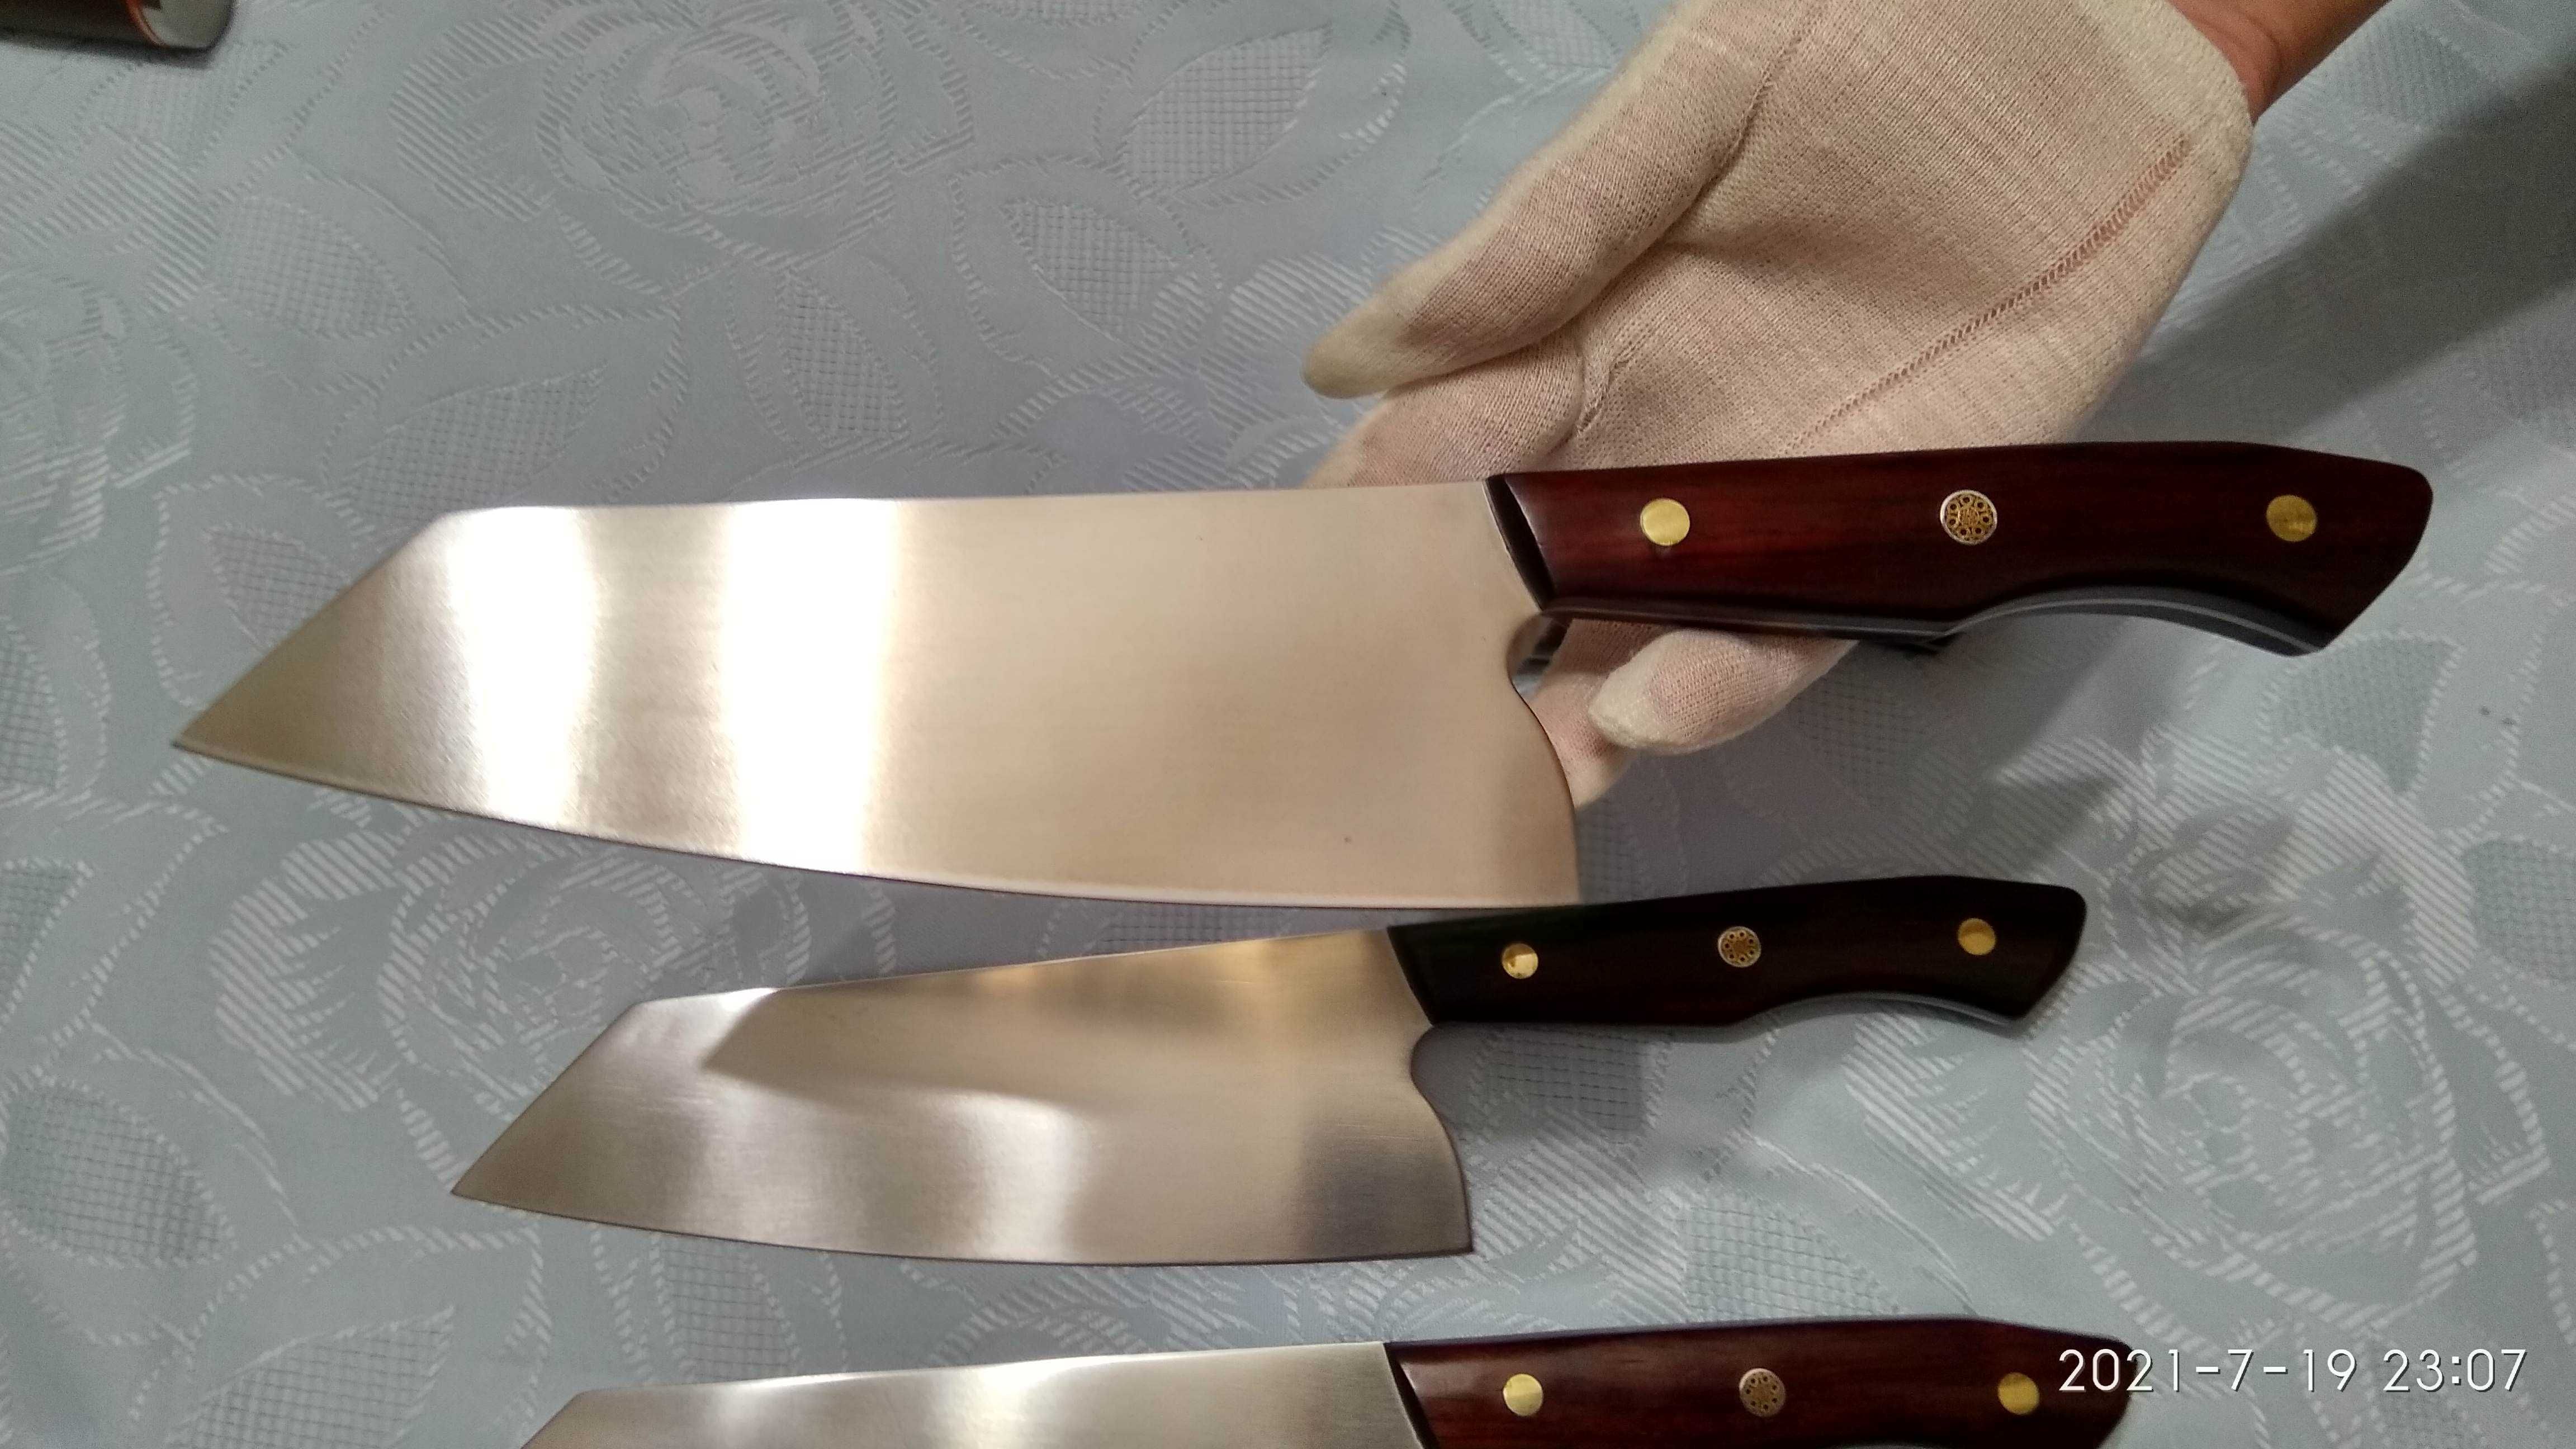 Кухонный шеф нож (dc53 улучшенная сталь чем D2, 60hrc, лезвие 20 см)